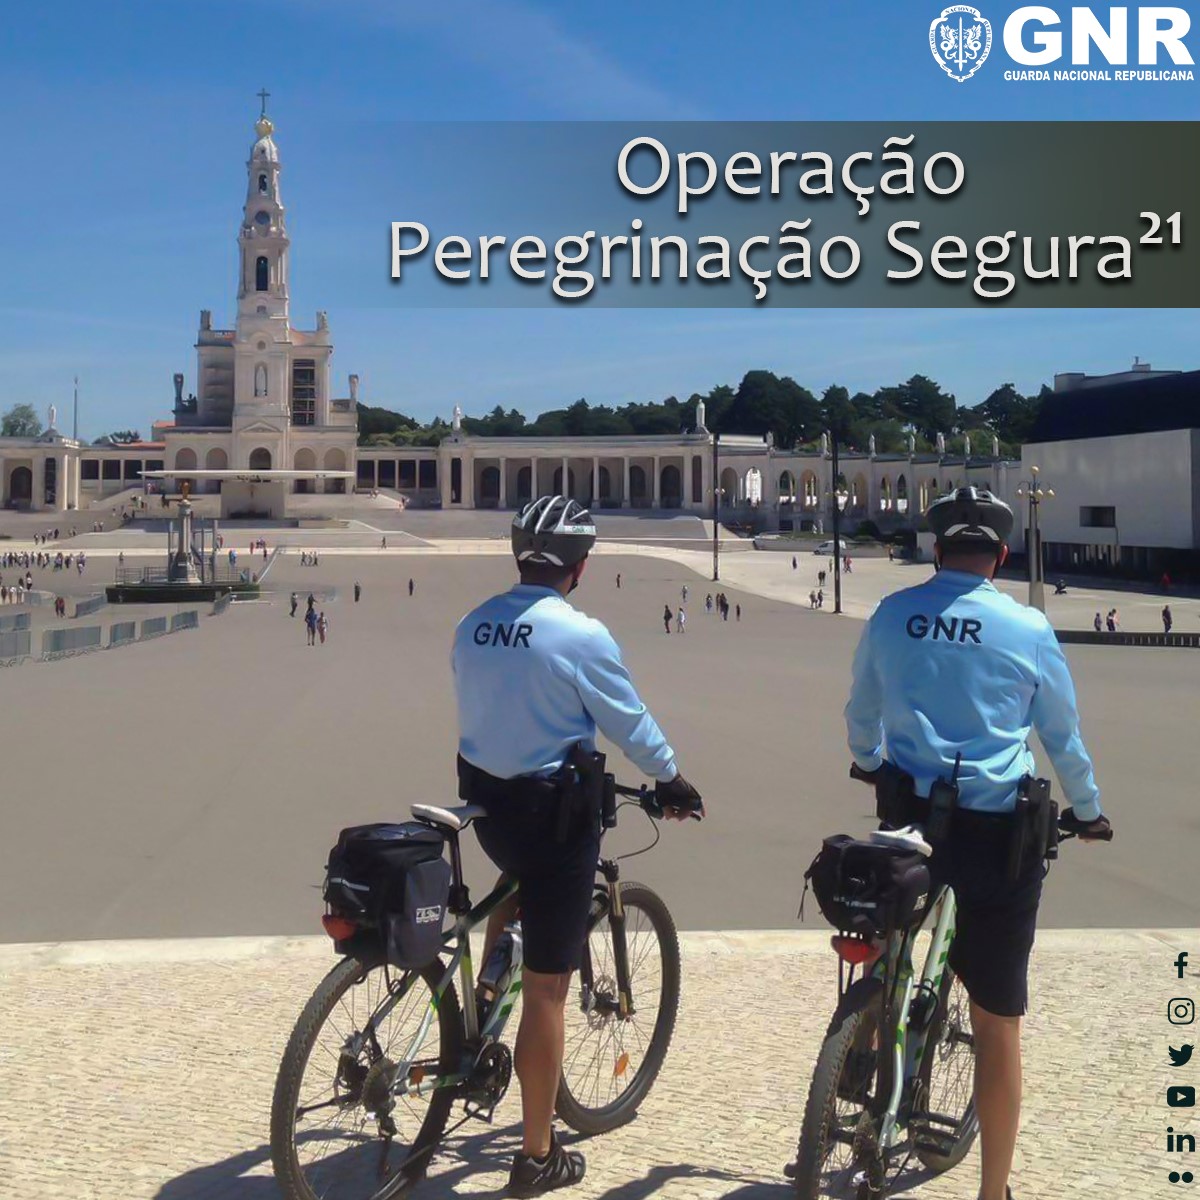 “Operação Peregrinação Segura” – GNR garante segurança das Celebrações da Peregrinação Internacional Aniversária